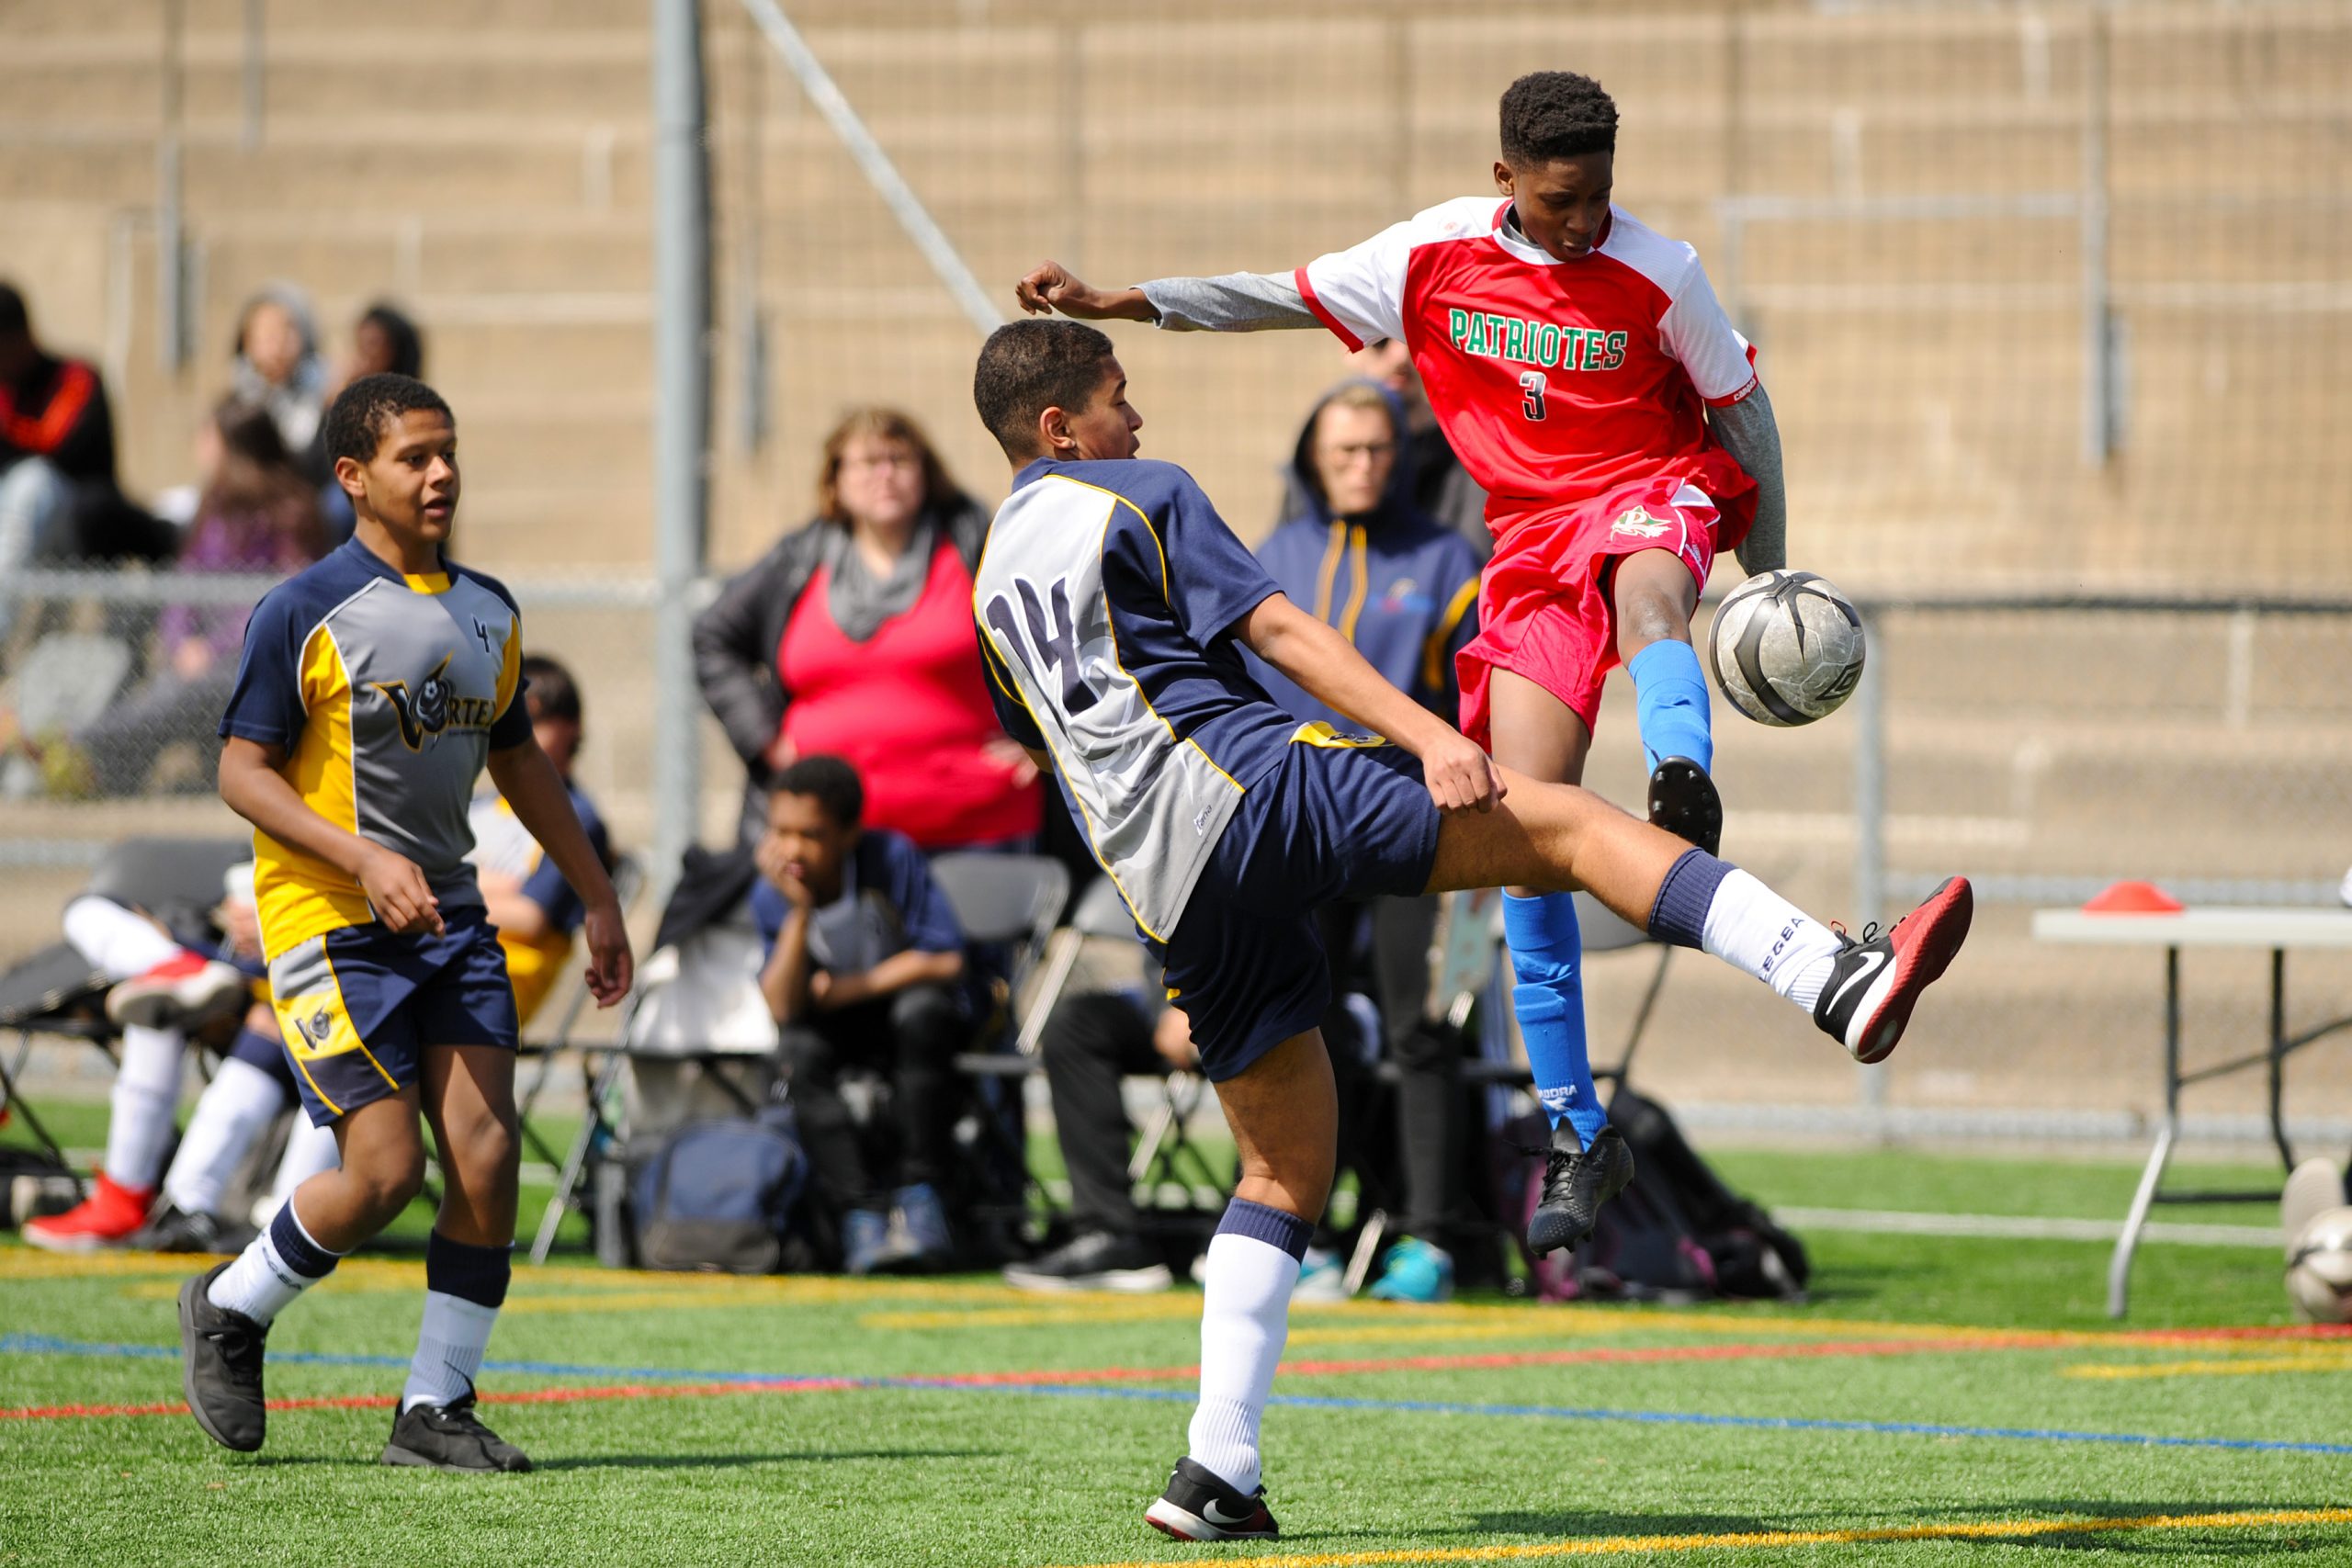 Description de l'image : Au centre, deux jeunes joueurs de soccer se disputent le ballon. L'un des deux joueurs est dans les airs.